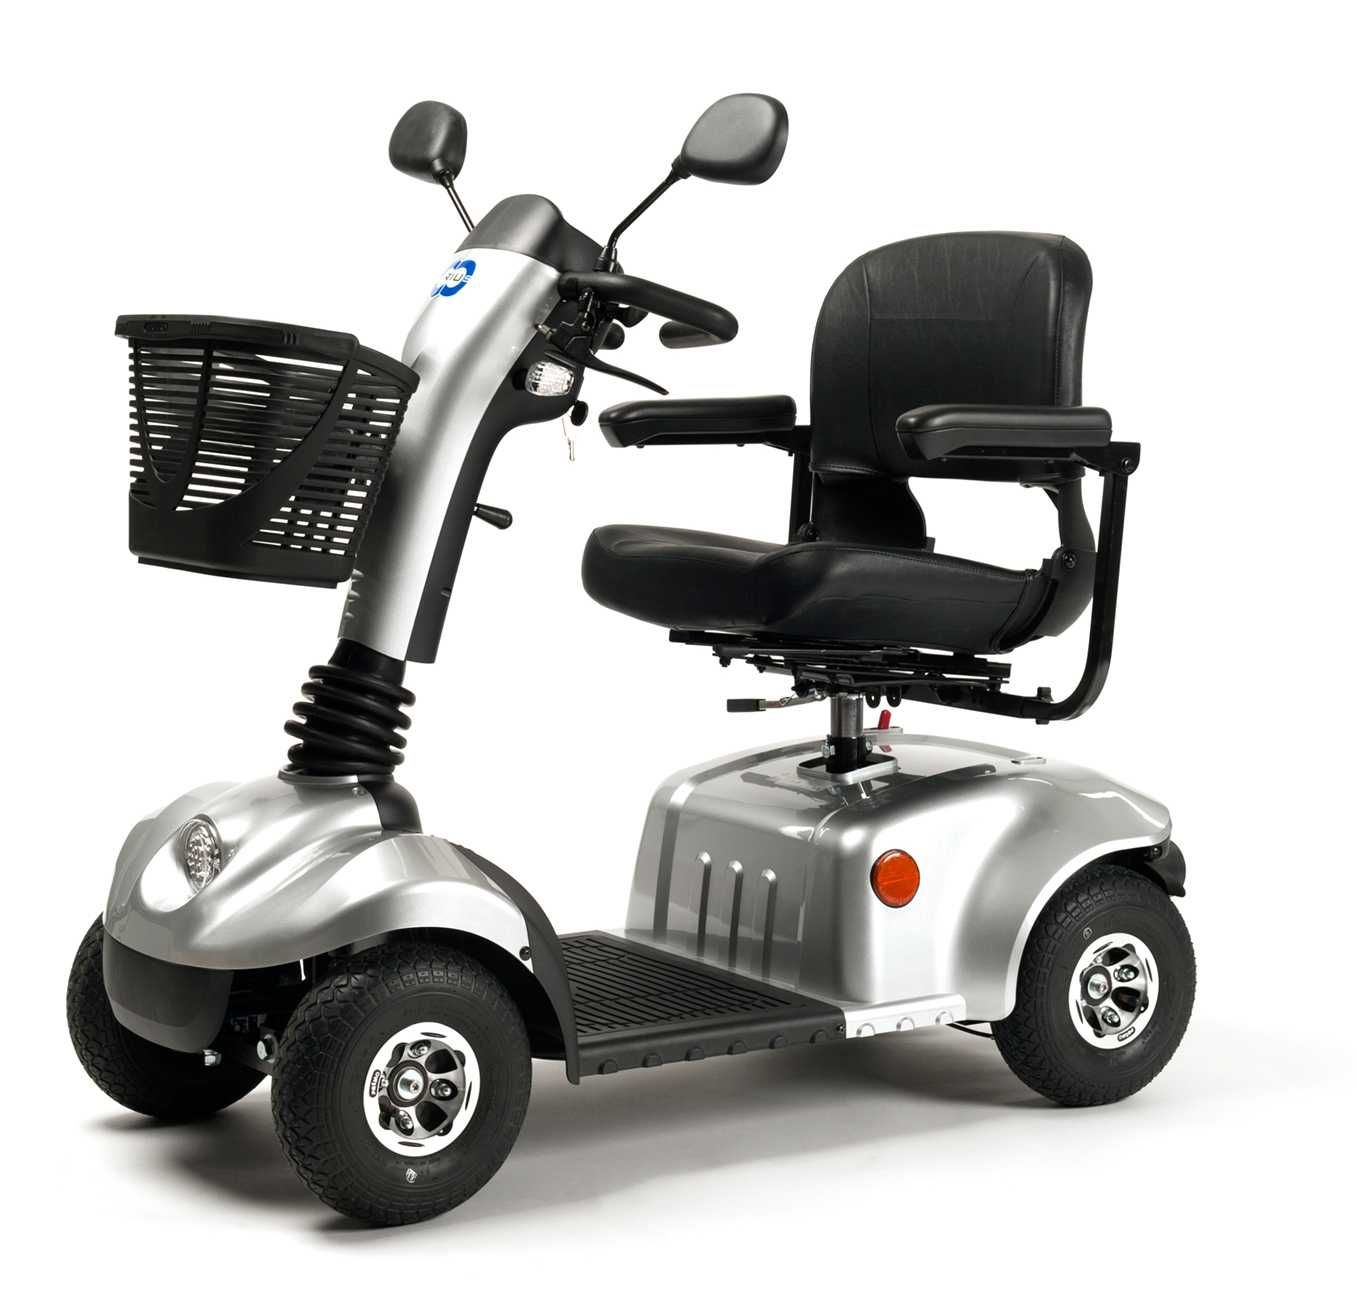 NOWY skuter inwalidzki elektryczny ERIS kompaktowy szybki SKLEP